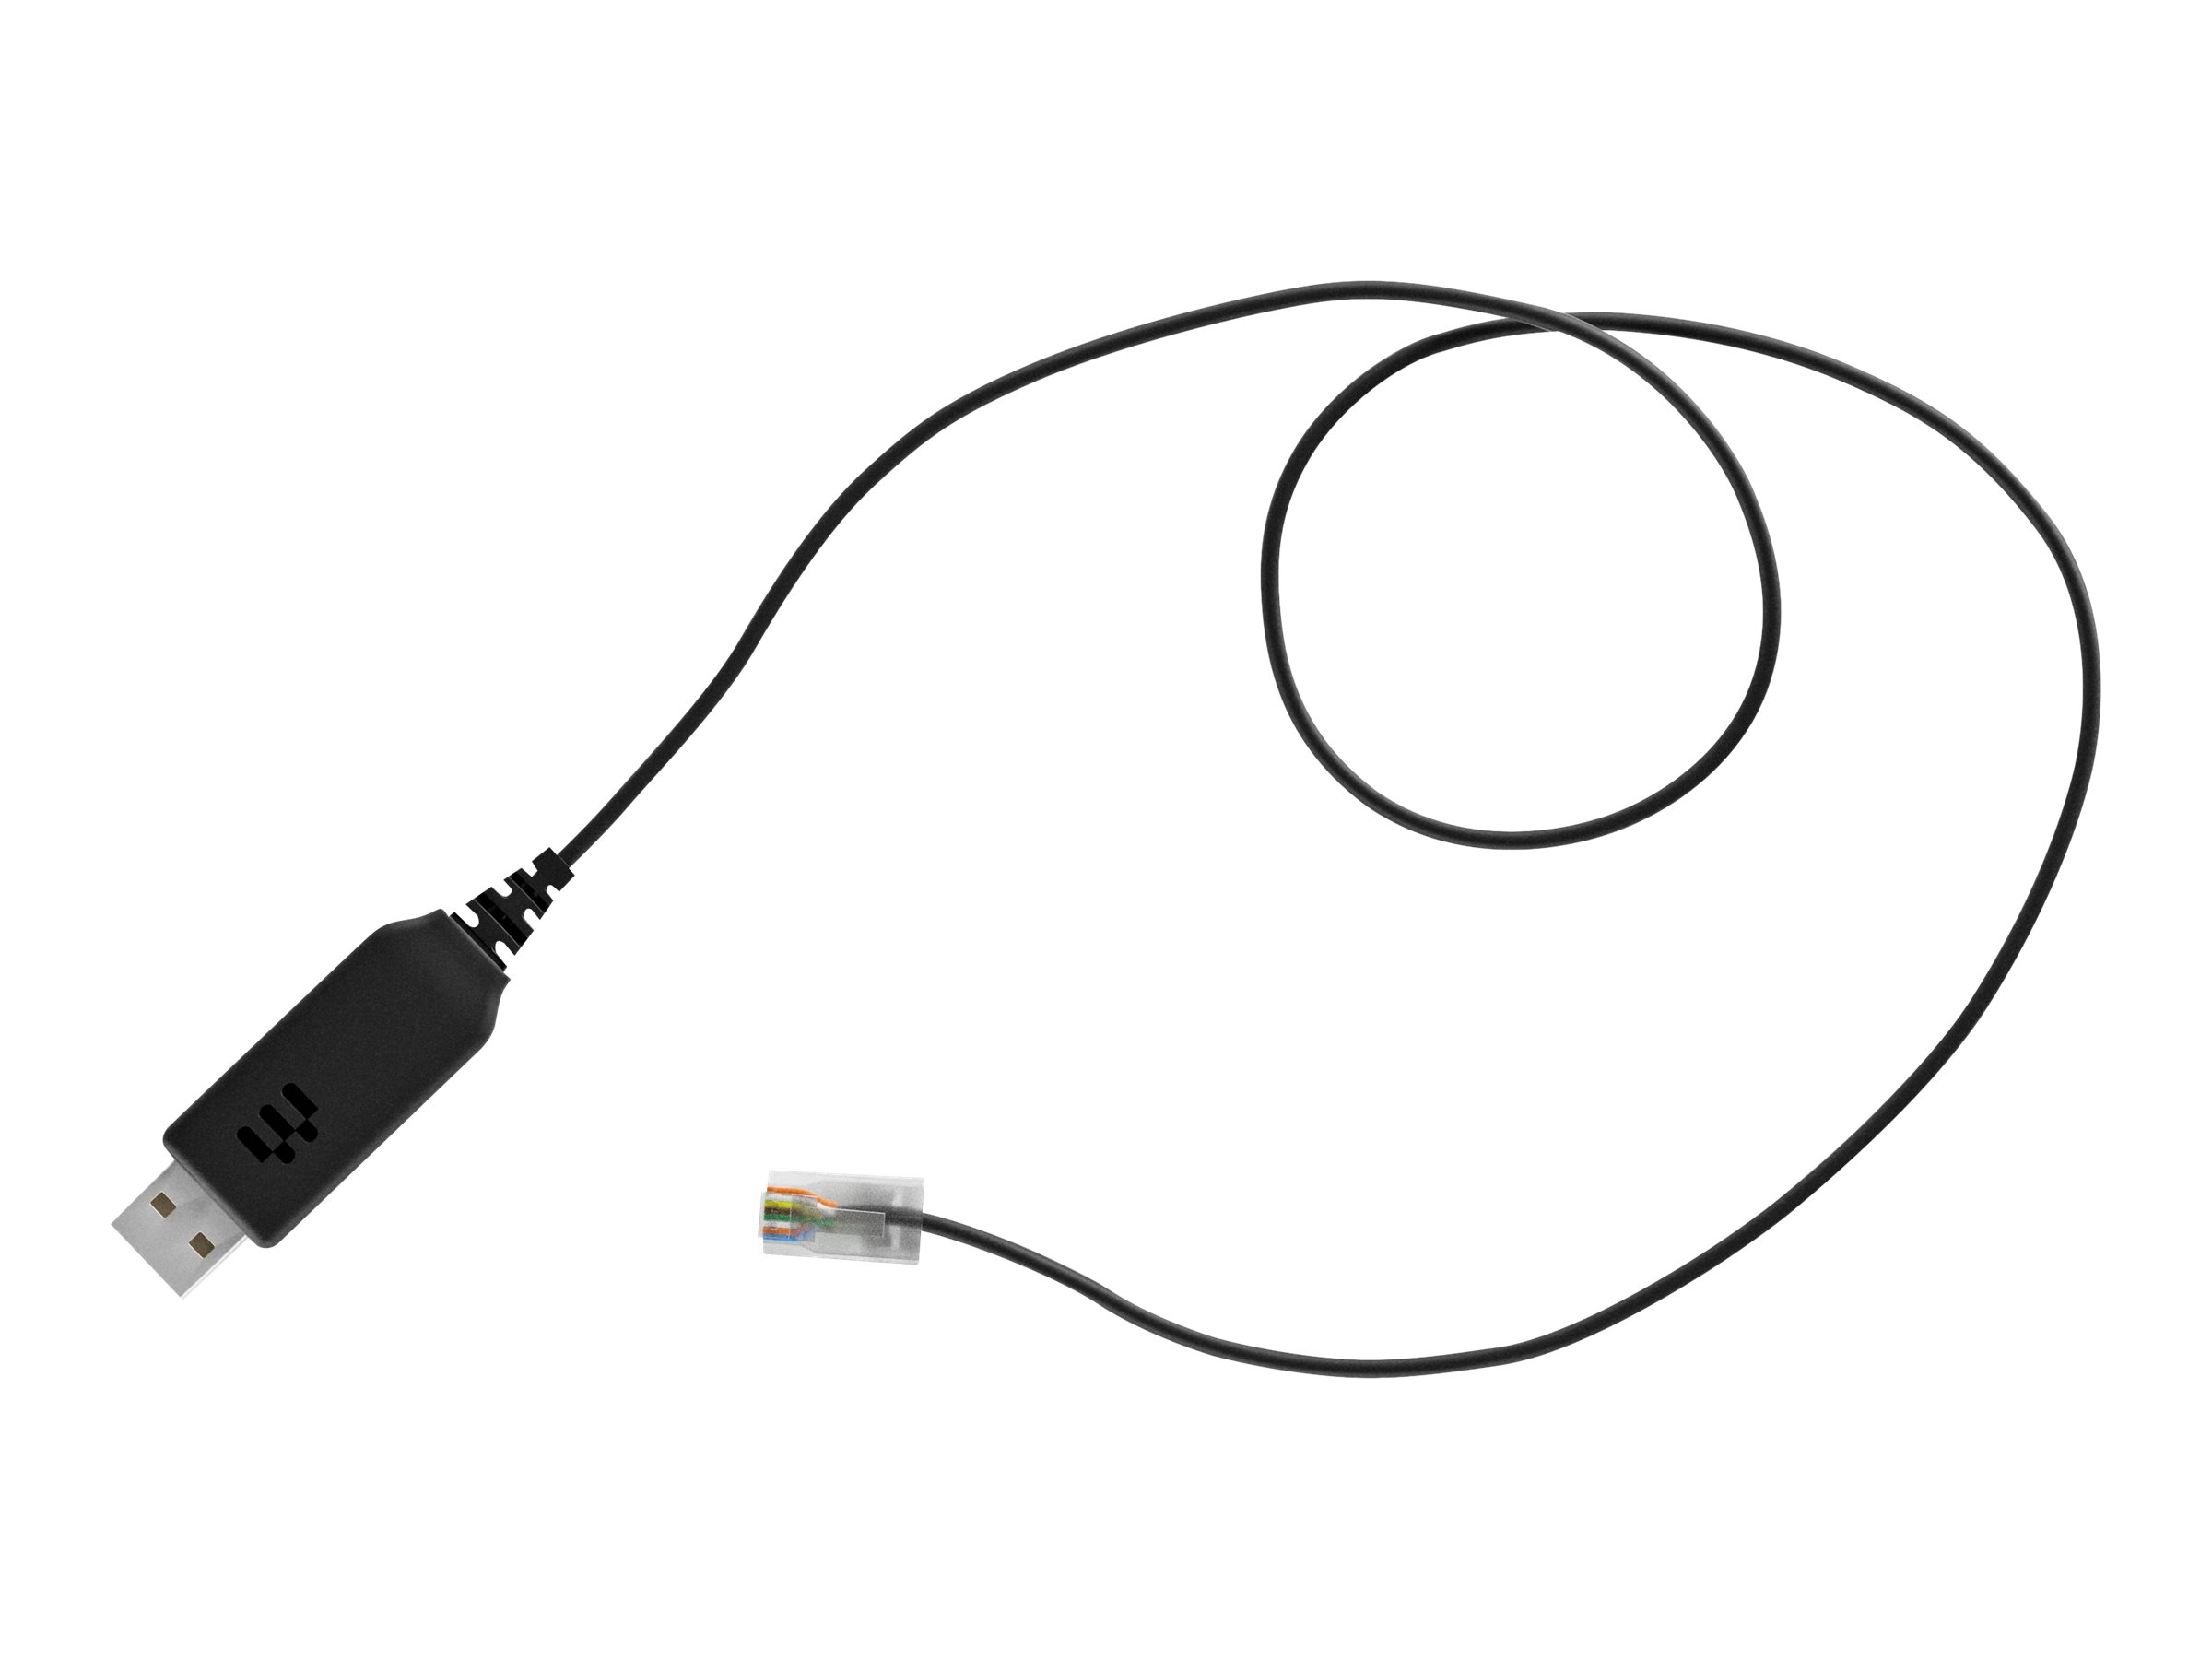 EPOS CEHS-CI 02 - Adaptateur pour crochet commutateur électronique pour casque, téléphone VoIP - pour AudioCodes 450; IMPACT D 10; IMPACT DW Office USB, Office USB ML, Pro2; IMPACT SDW 50XX - 1000747 - Accessoires pour écouteurs